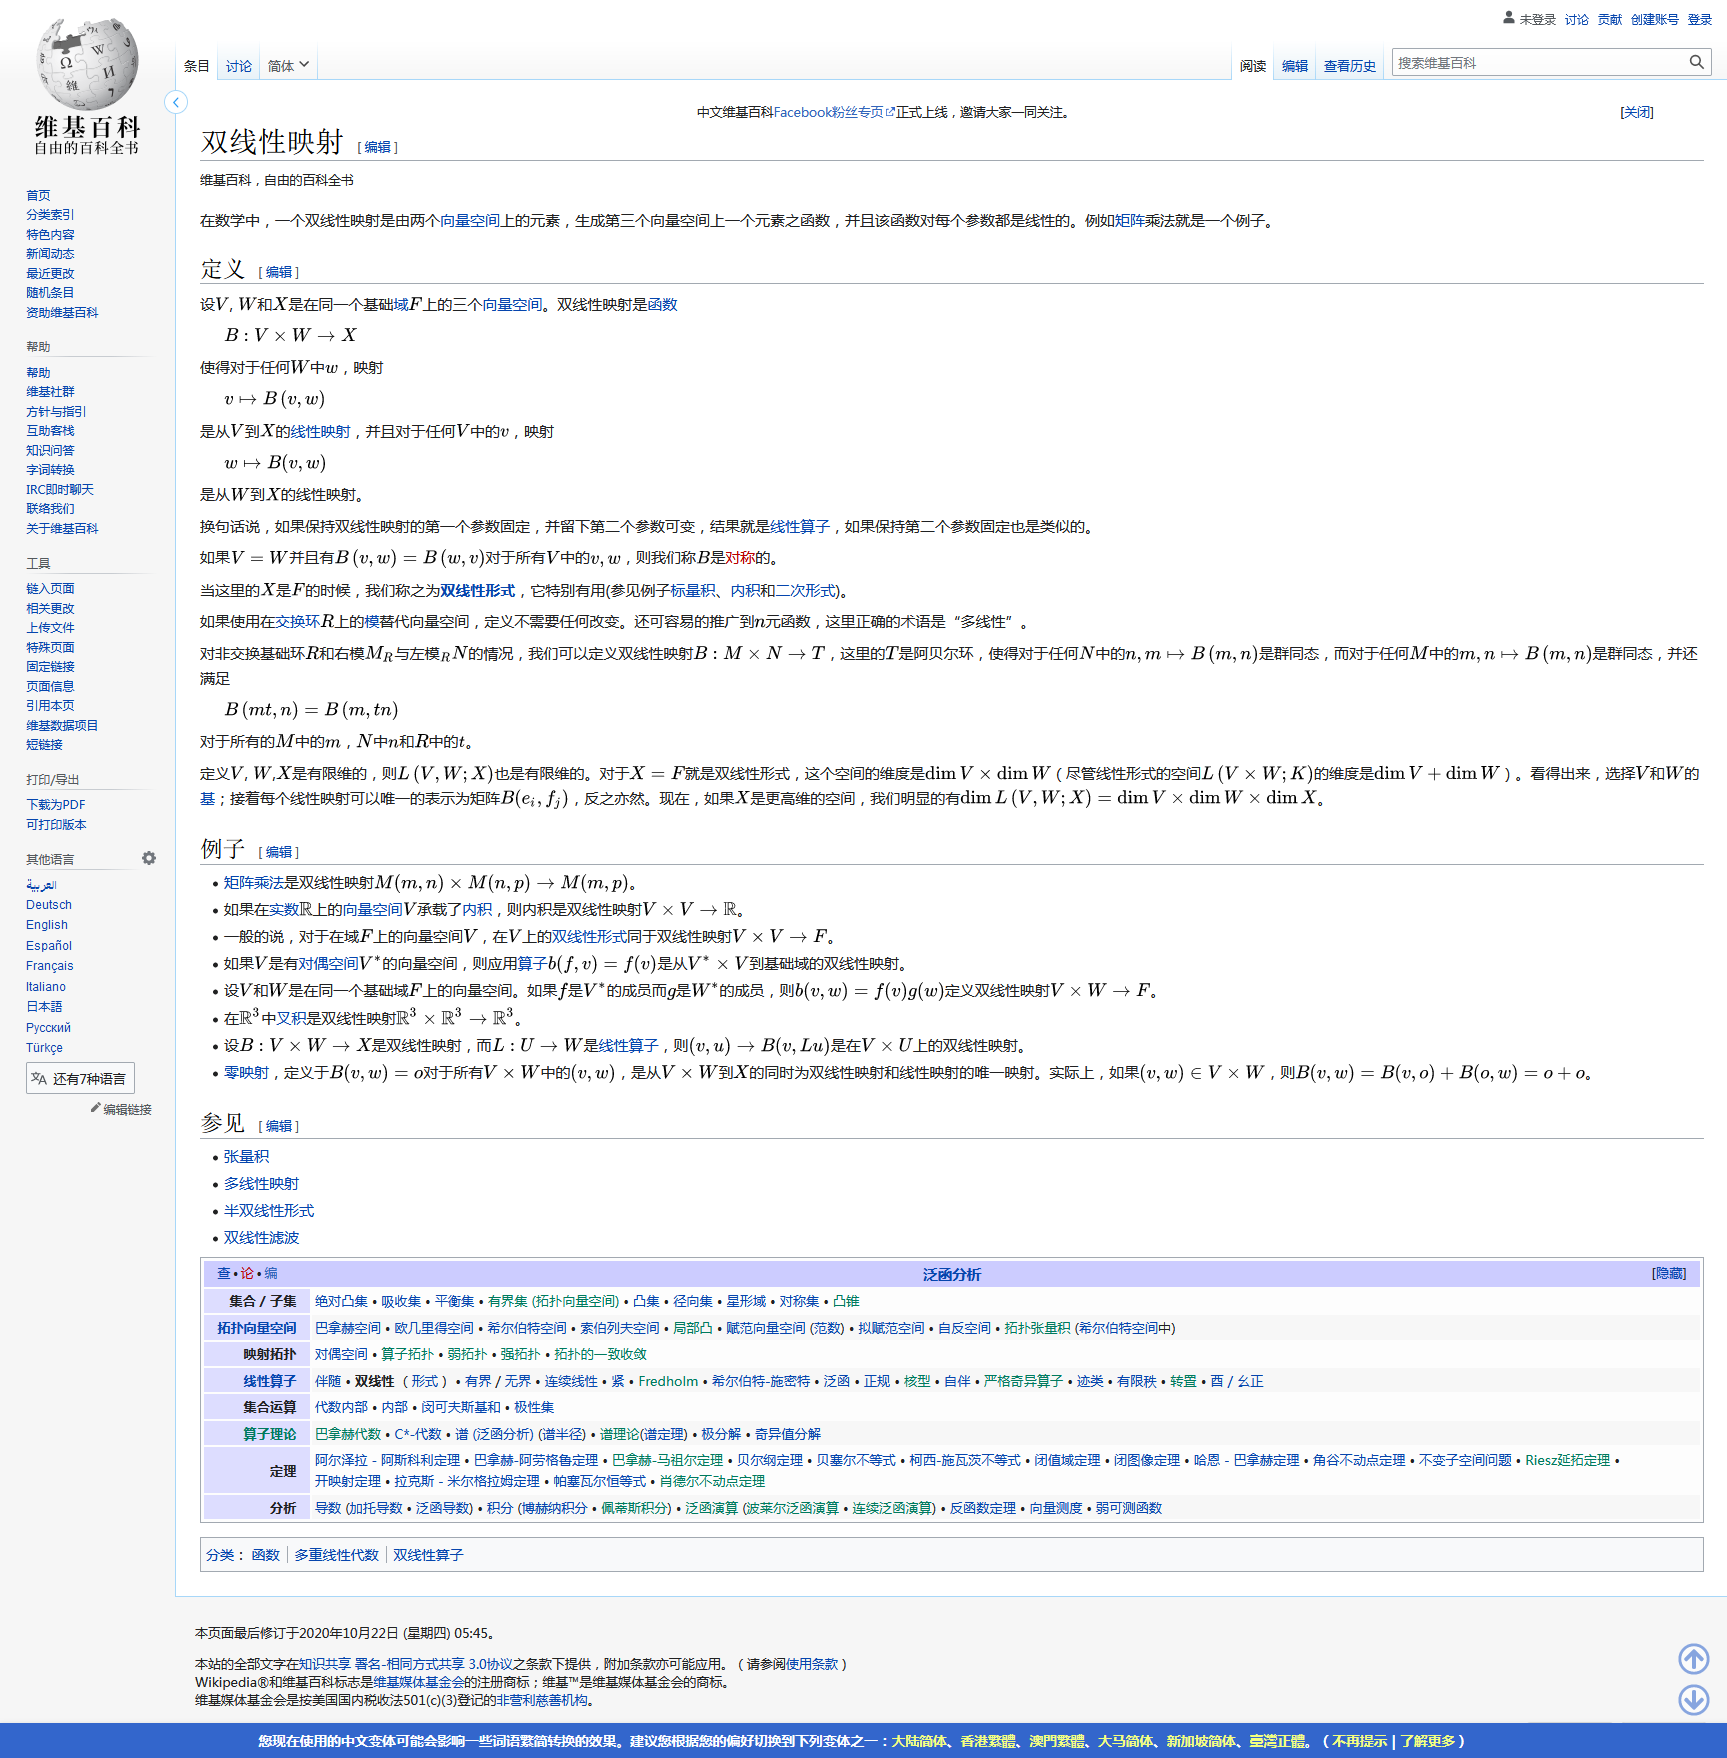 双线性性维基百科